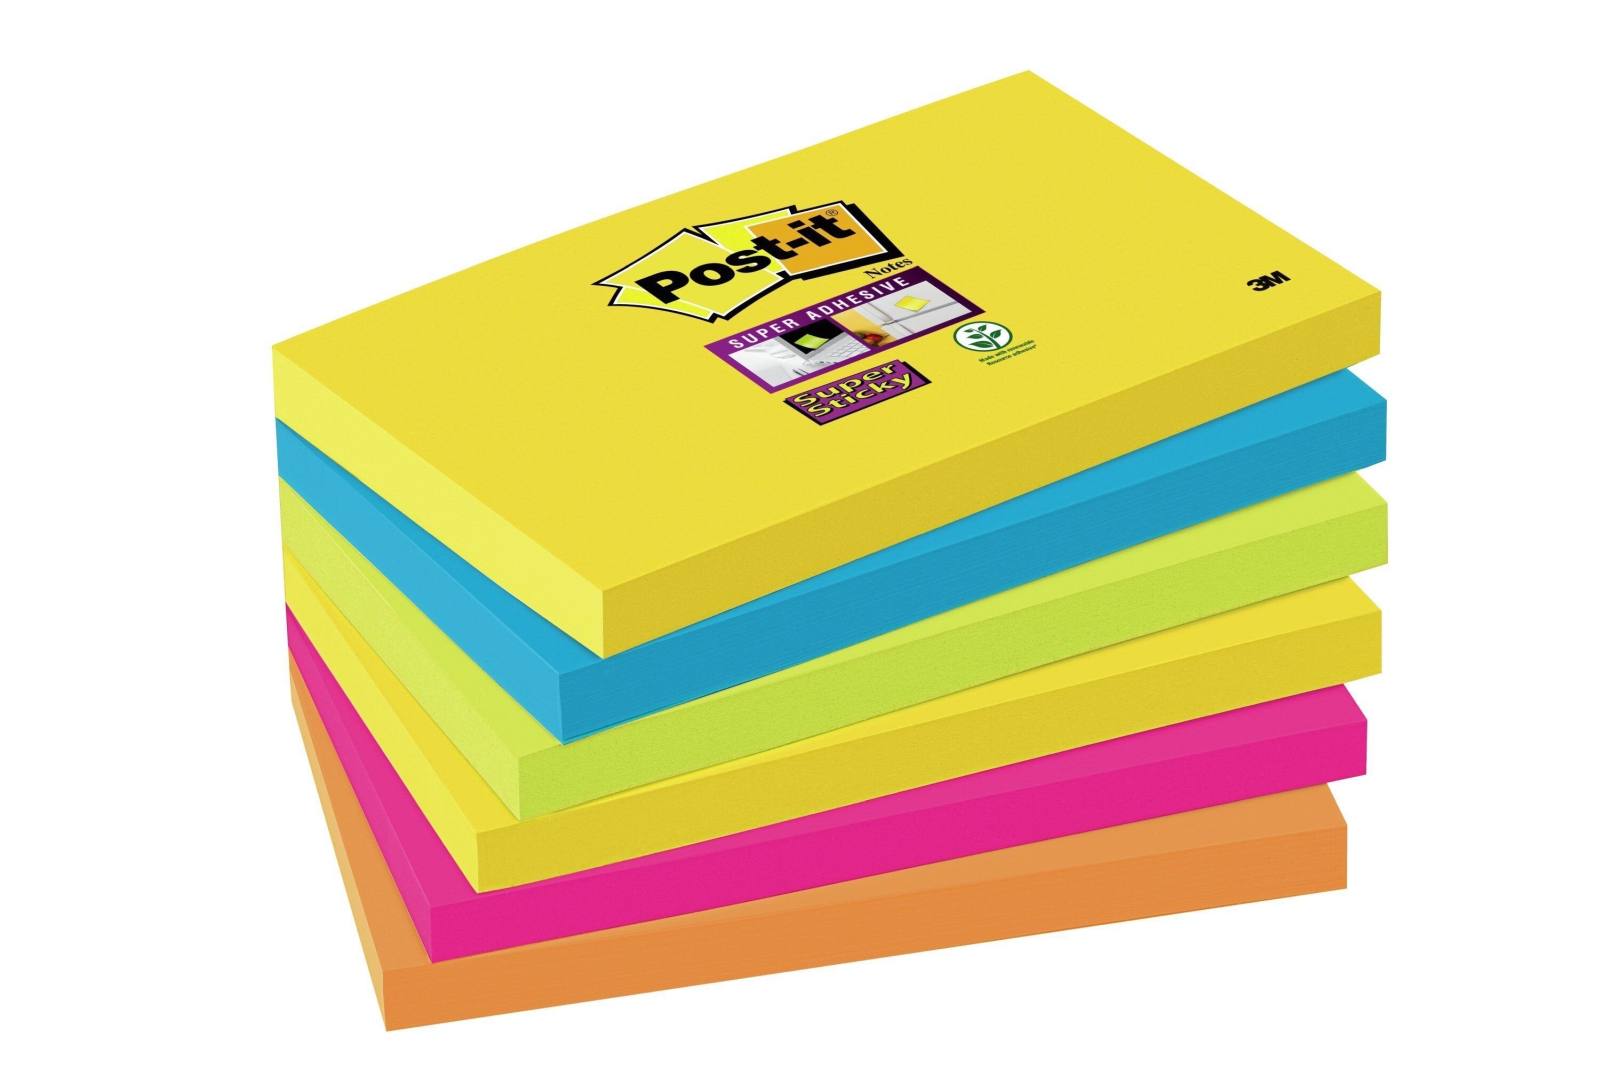 3M Post-it Super Sticky Notes 6556SR, 76 mm x 127 mm, verde neón, naranja neón, azul ultra, amarillo ultra, rosa ultra, 6 blocs de 90 hojas cada uno